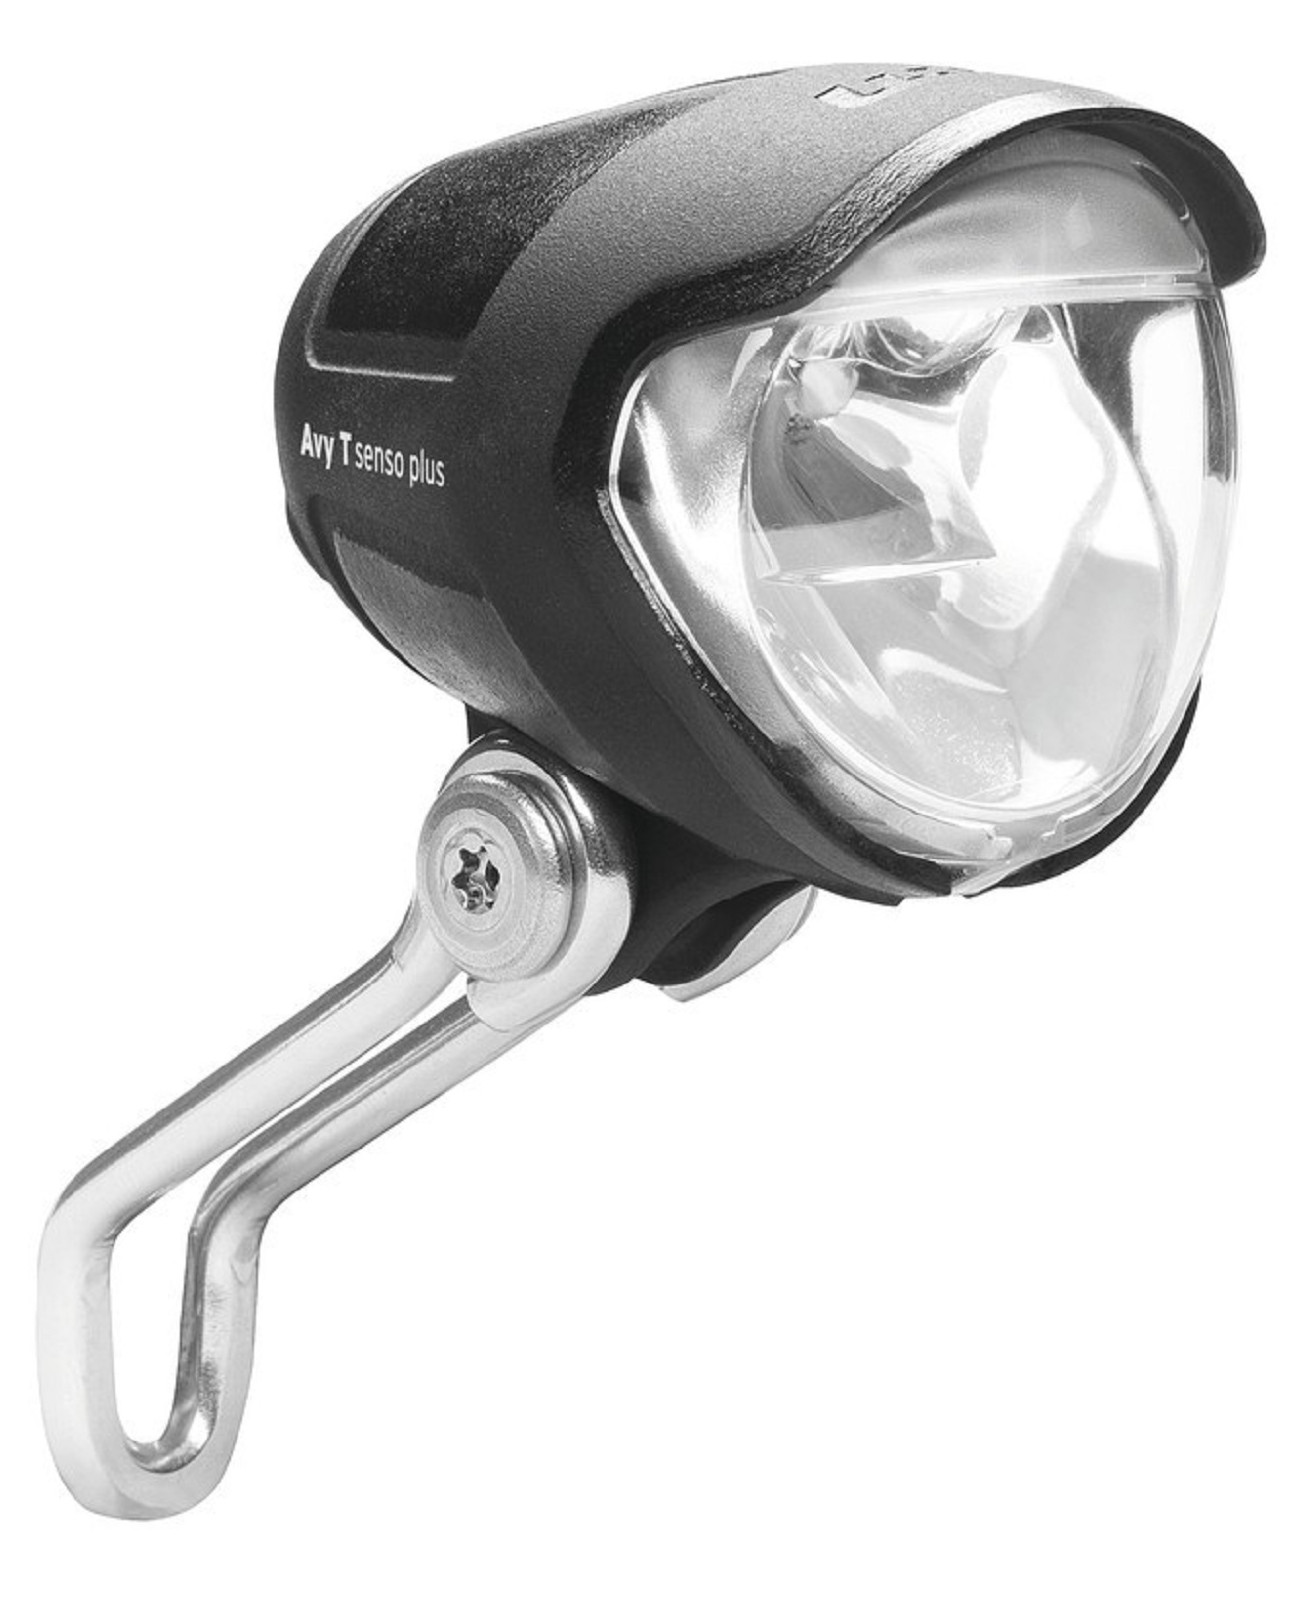 B&M LED-Scheinwerfer  Lumotec IQ Avy N plus  m. Schalter/Standlicht 40 Lux